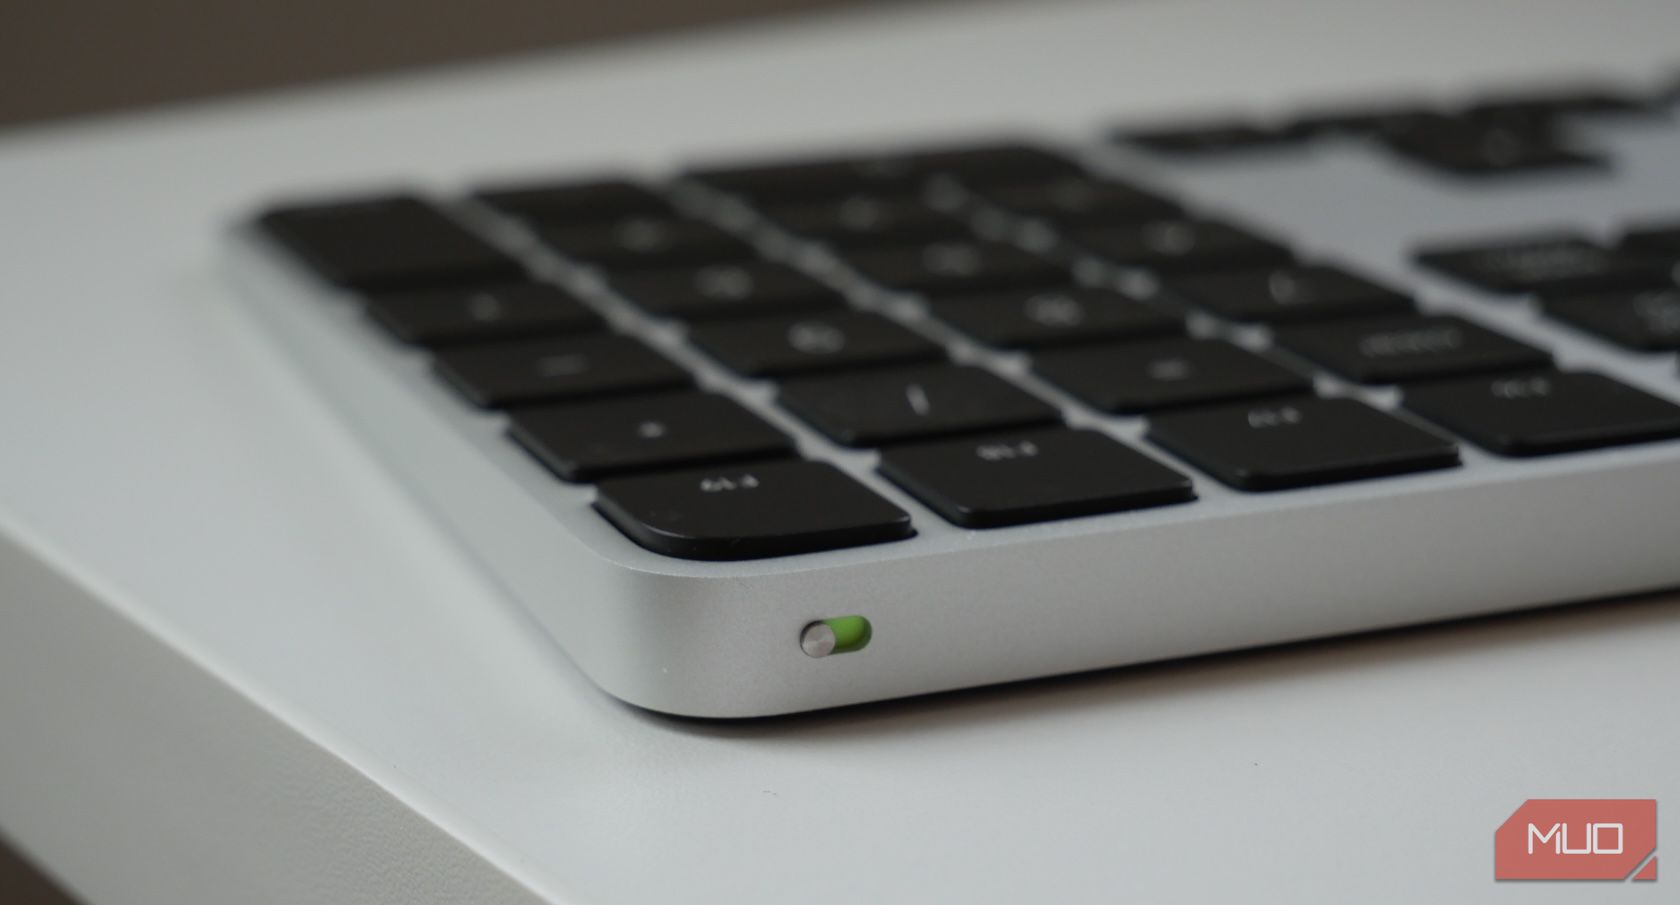 Come accendere e connettere la tua Apple Magic Keyboard